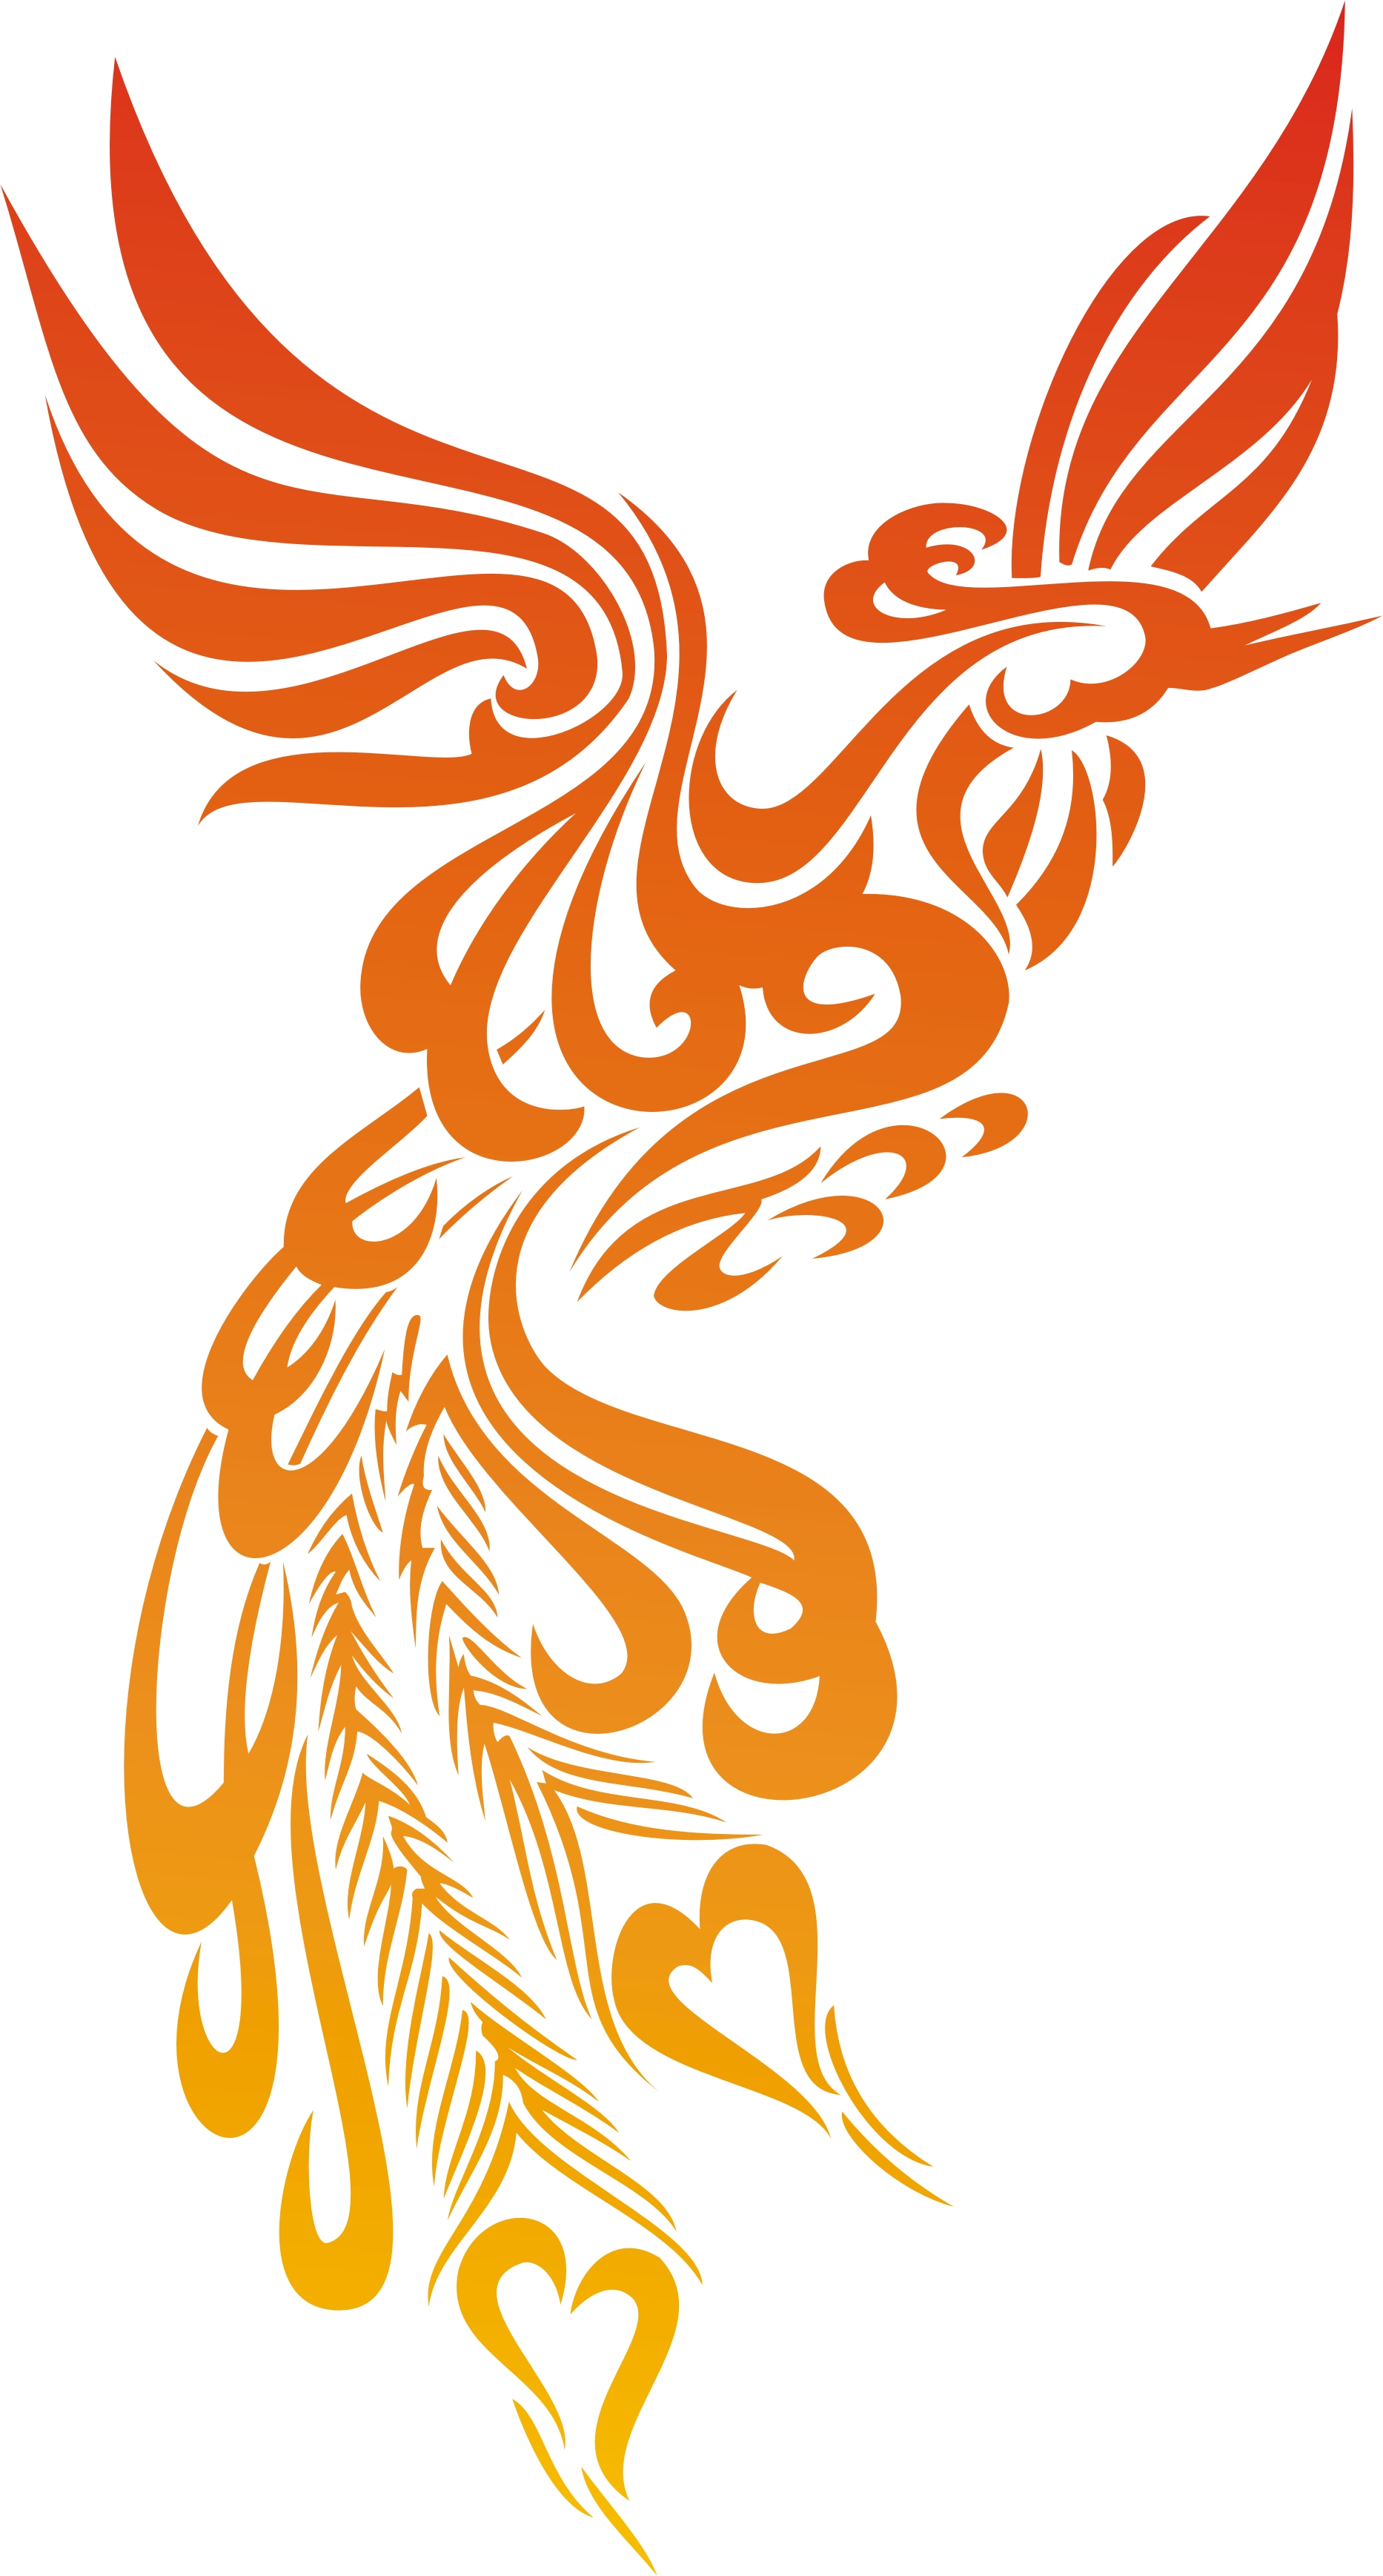 Phoenix Bird Tribal Tattoo Car or Truck Window Decal Sticker - Rad Dezigns